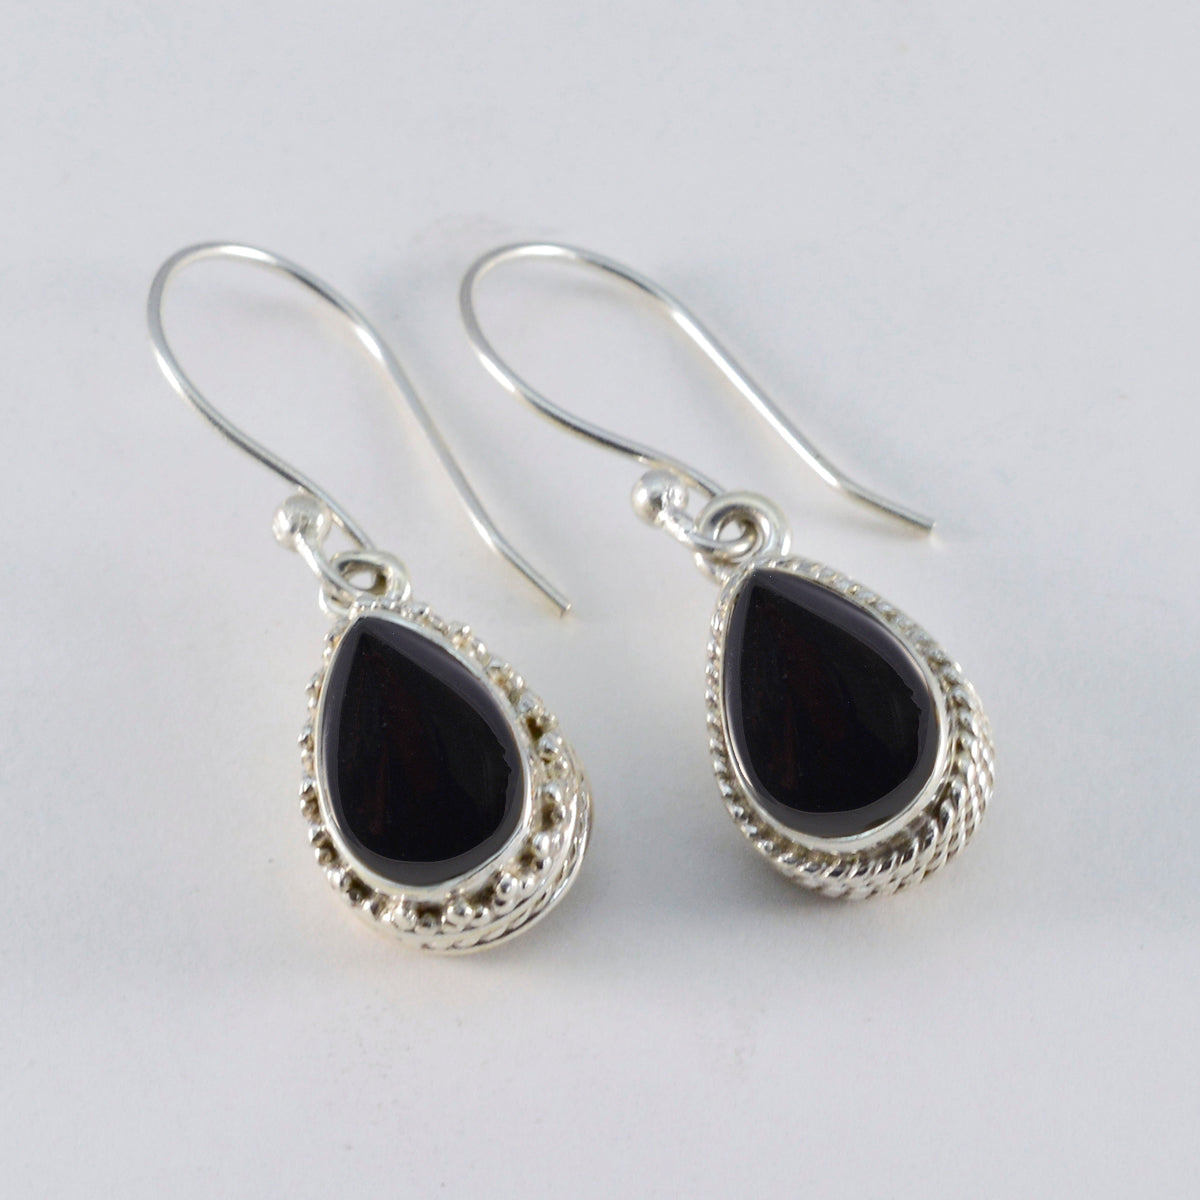 Riyo Ästhetischer Sterlingsilber-Ohrring für Damen, schwarzer Onyx-Ohrring, Lünettenfassung, schwarzer Ohrring, baumelnder Ohrring